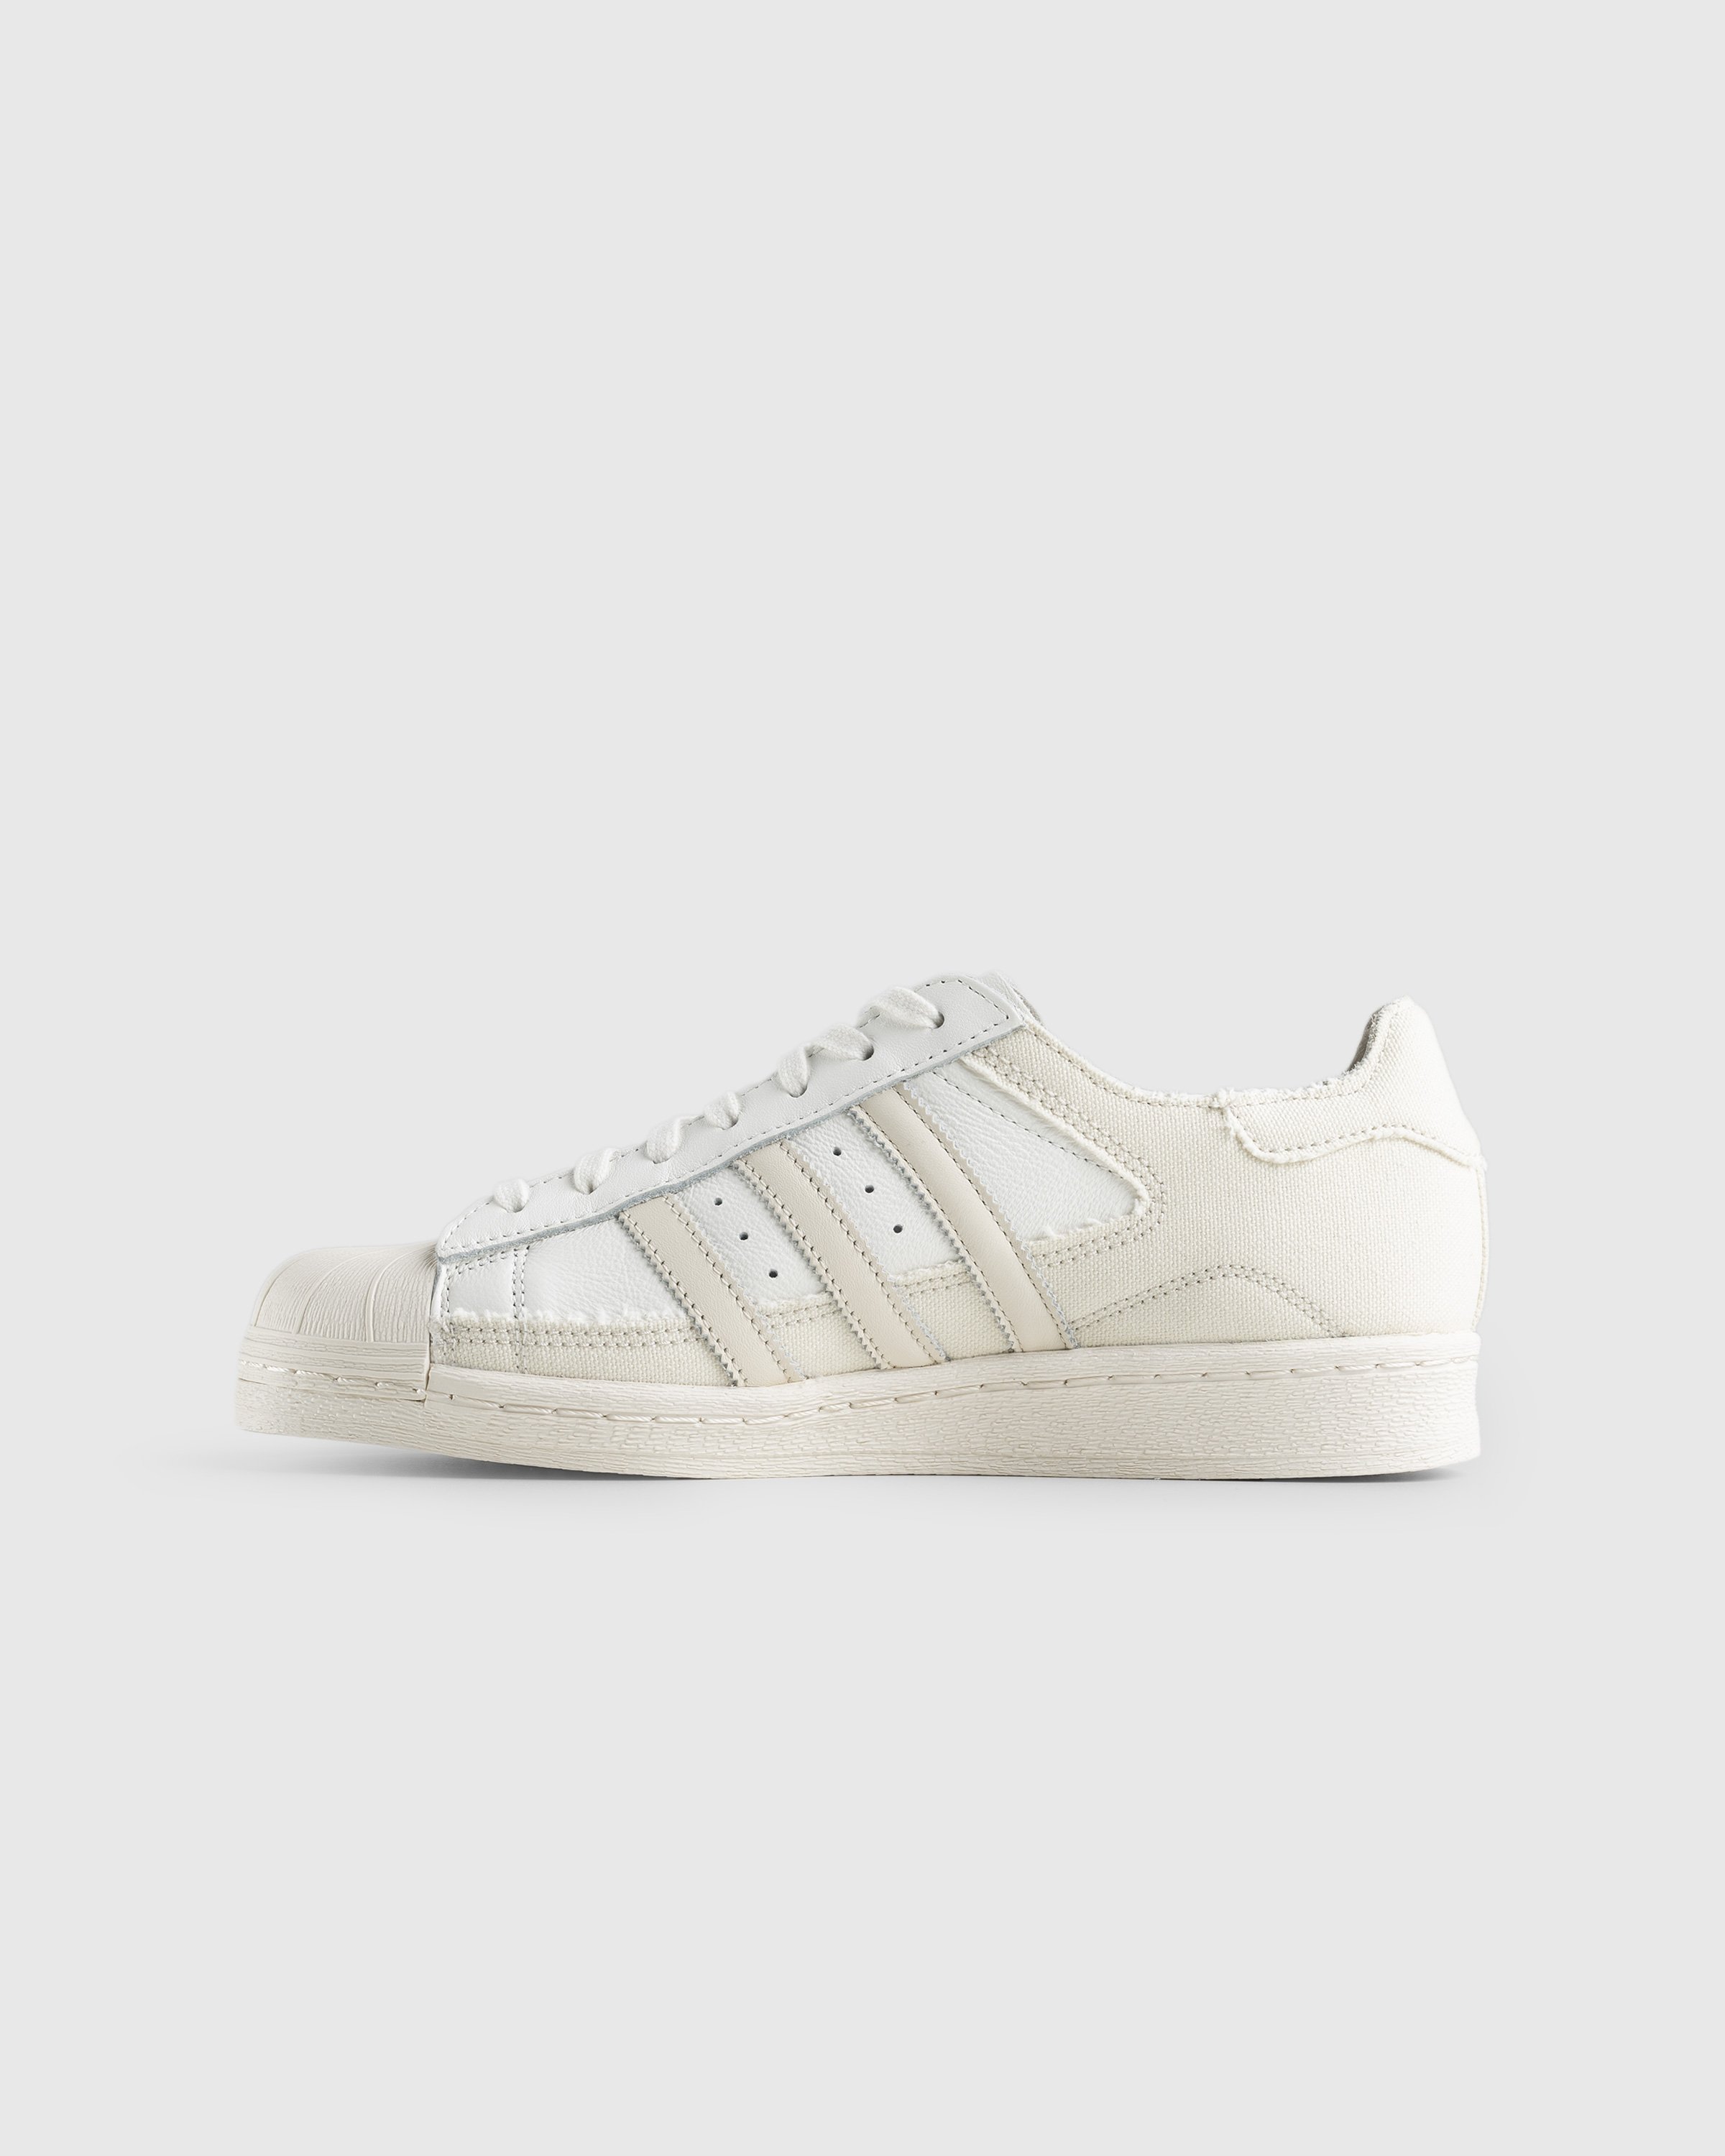 Adidas - Superstar 82 White/Beige - Footwear - Beige - Image 2